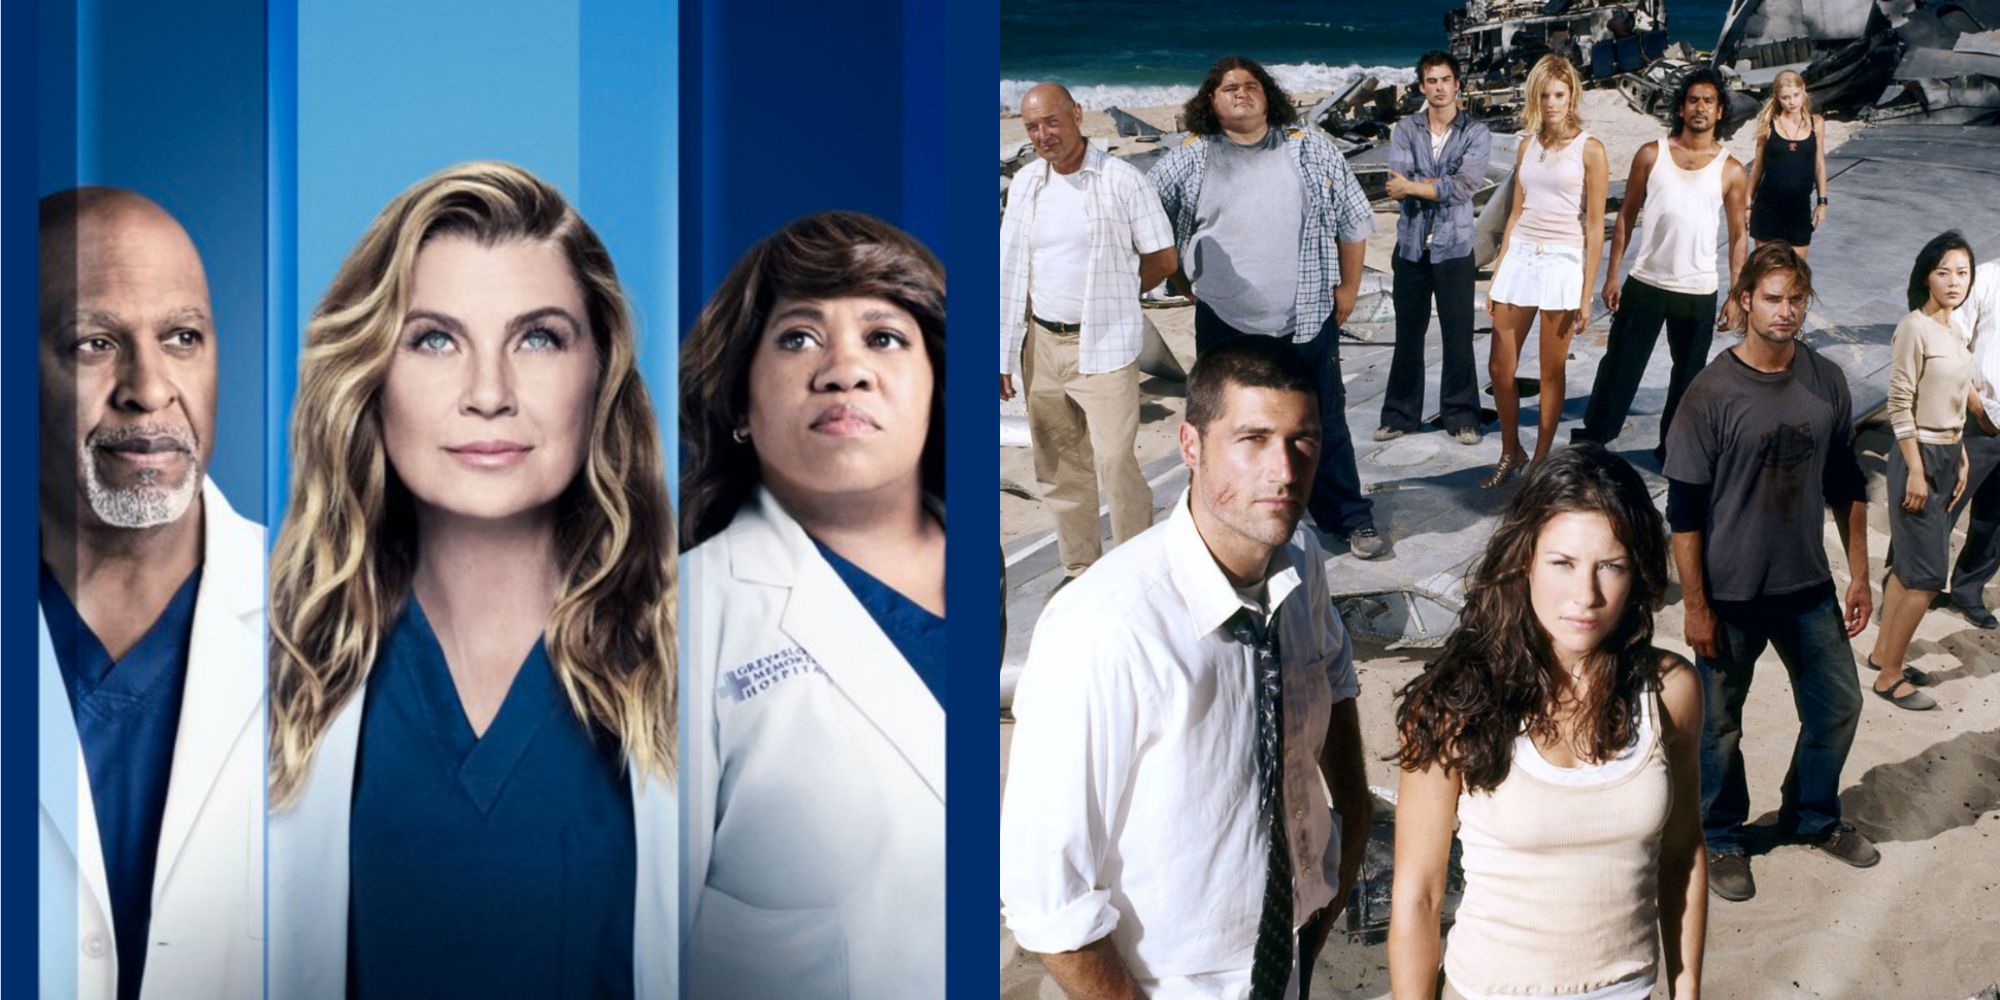 10 espectáculos en los que Grey’s Anatomy podría cruzarse, según Reddit